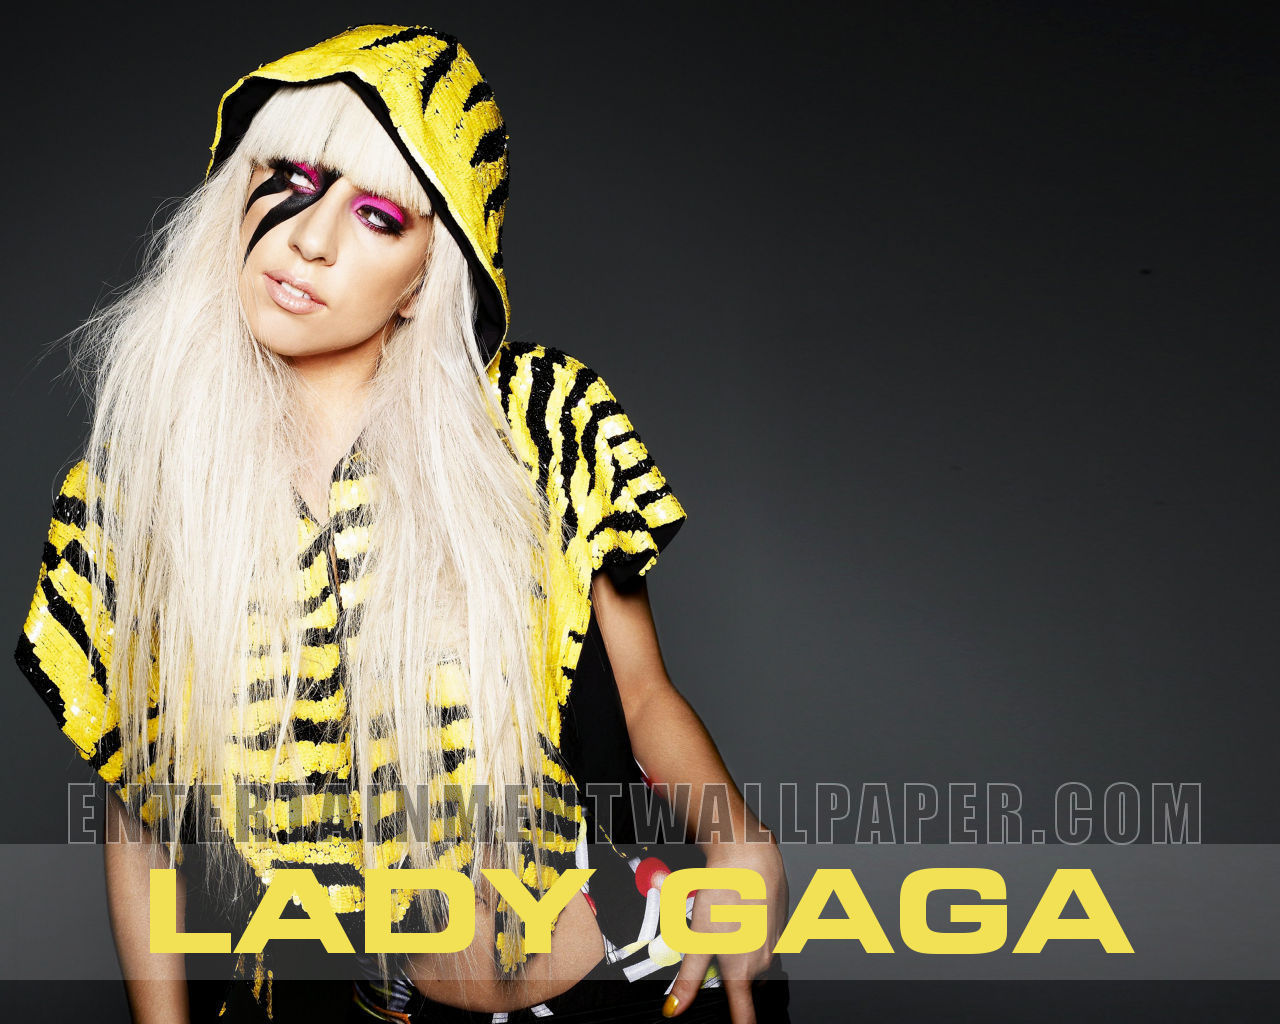 Lady Gaga Wallpaper Background HD